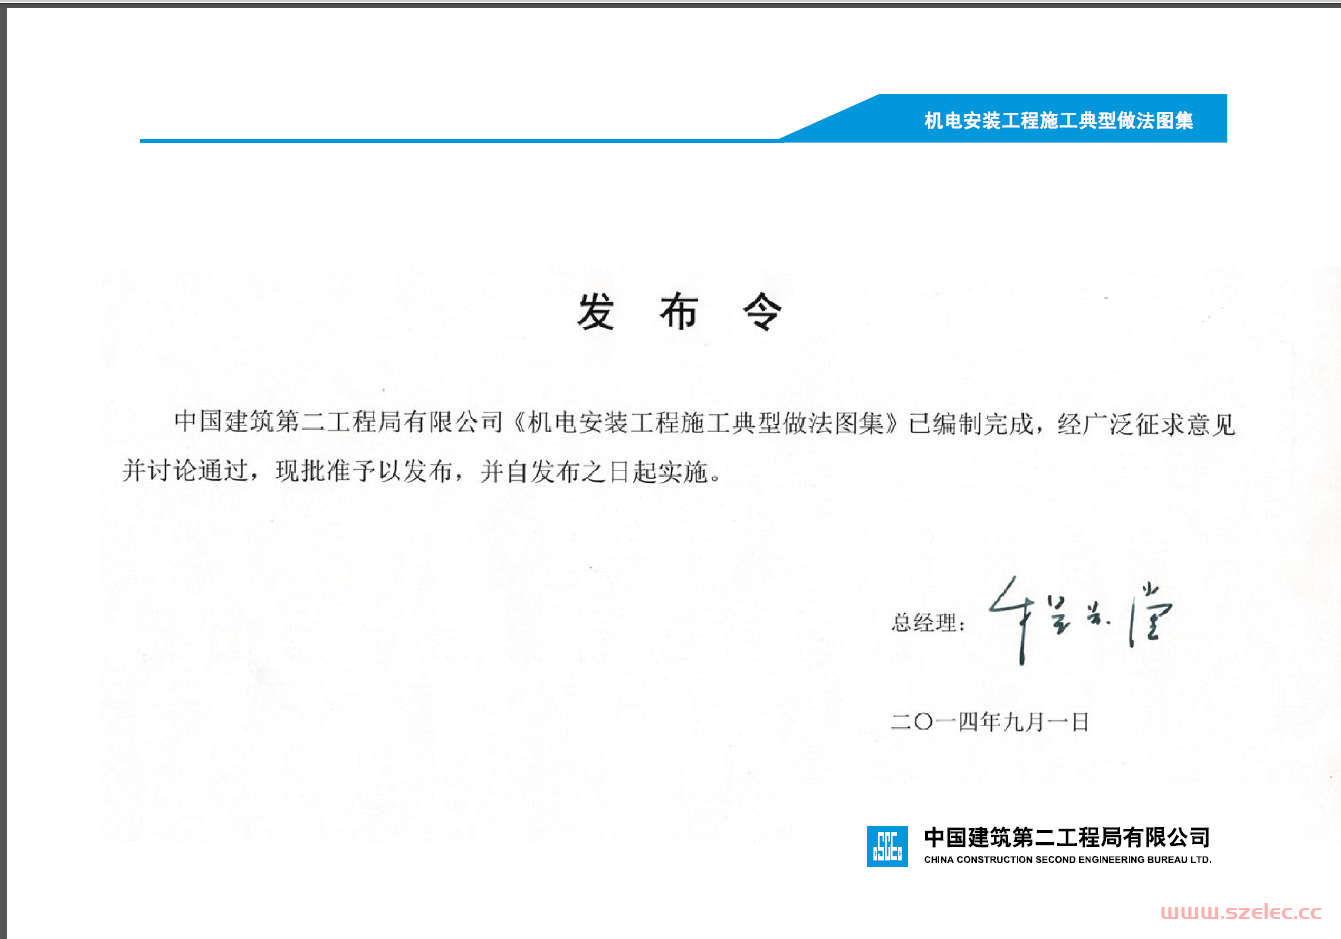 中国建筑第二工程局有限公司建筑机电安装工程标准化施工做法图集145页